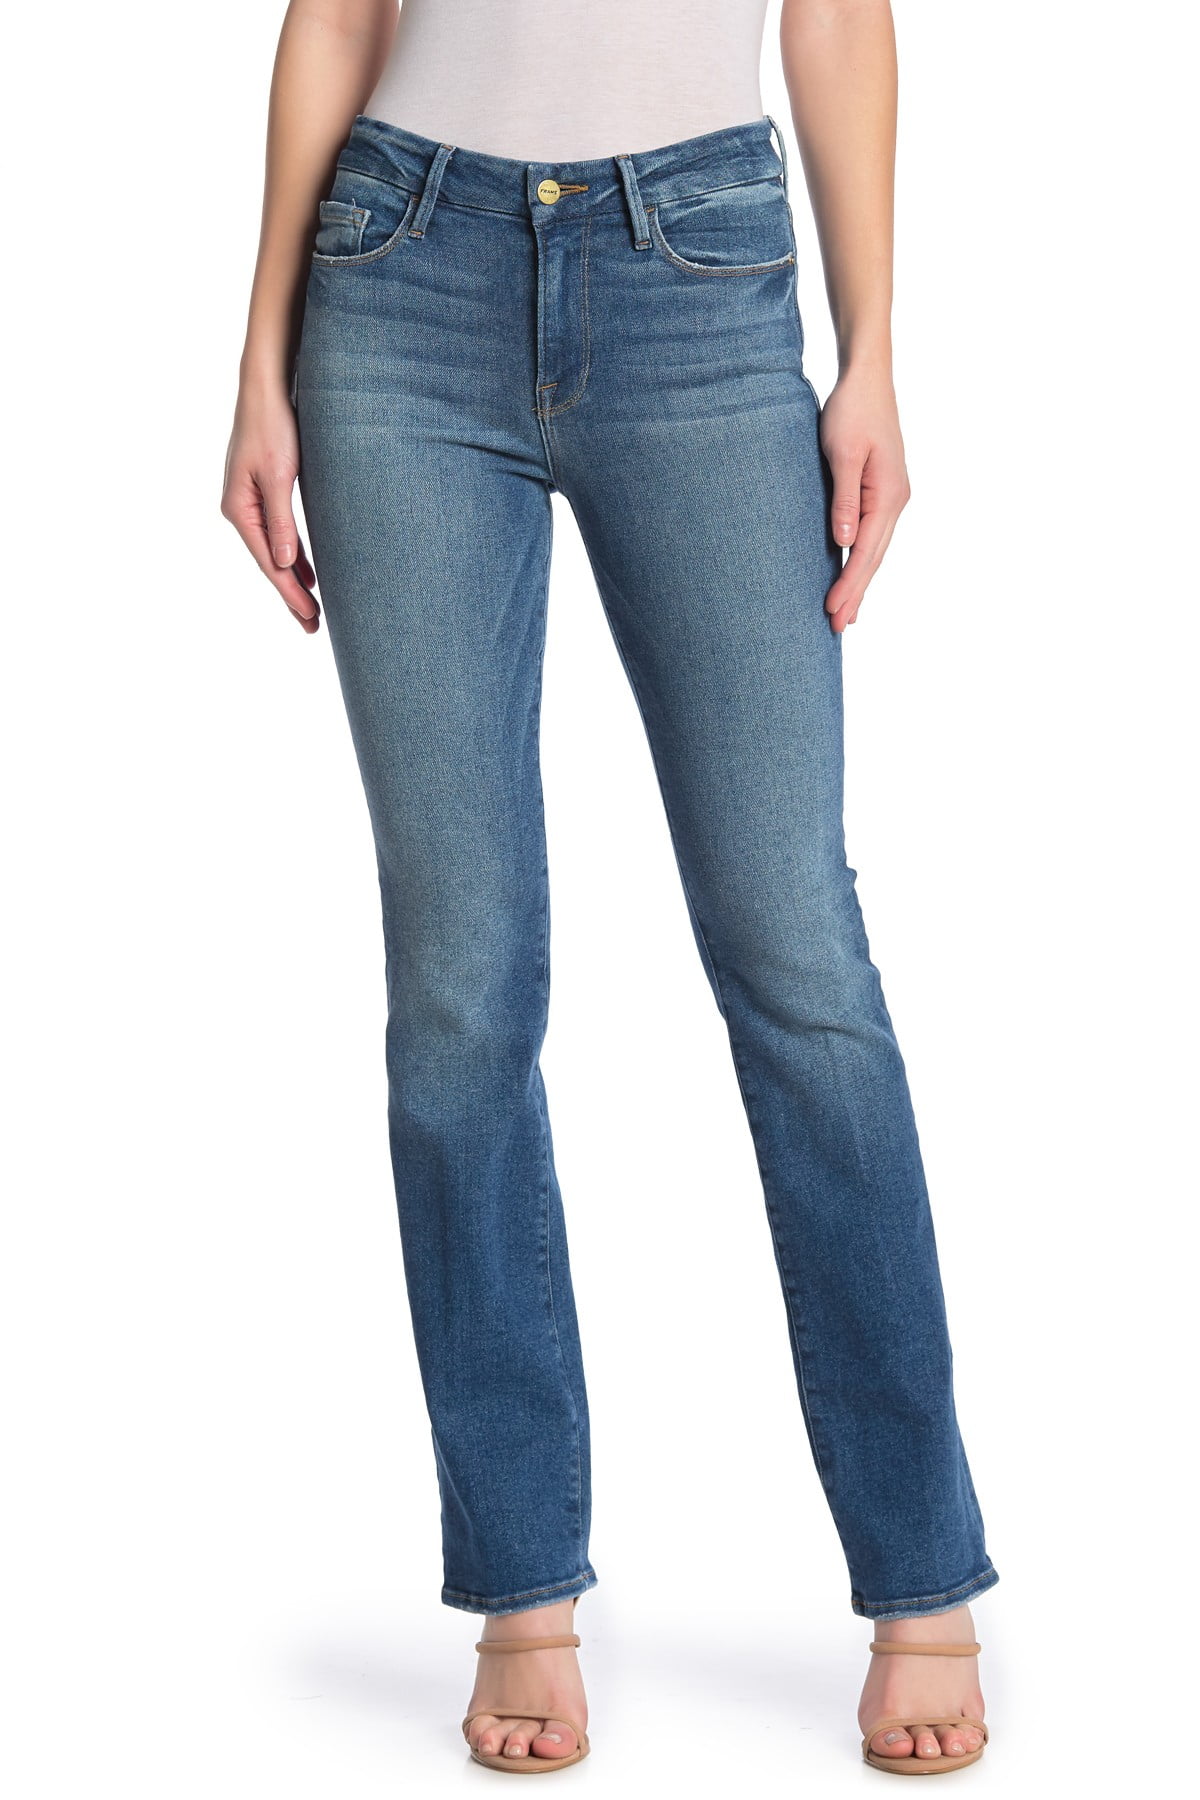 Denim Womens Jeans Flat Creek 27x32 Le Mini Bootcut 27 - Walmart.com ...